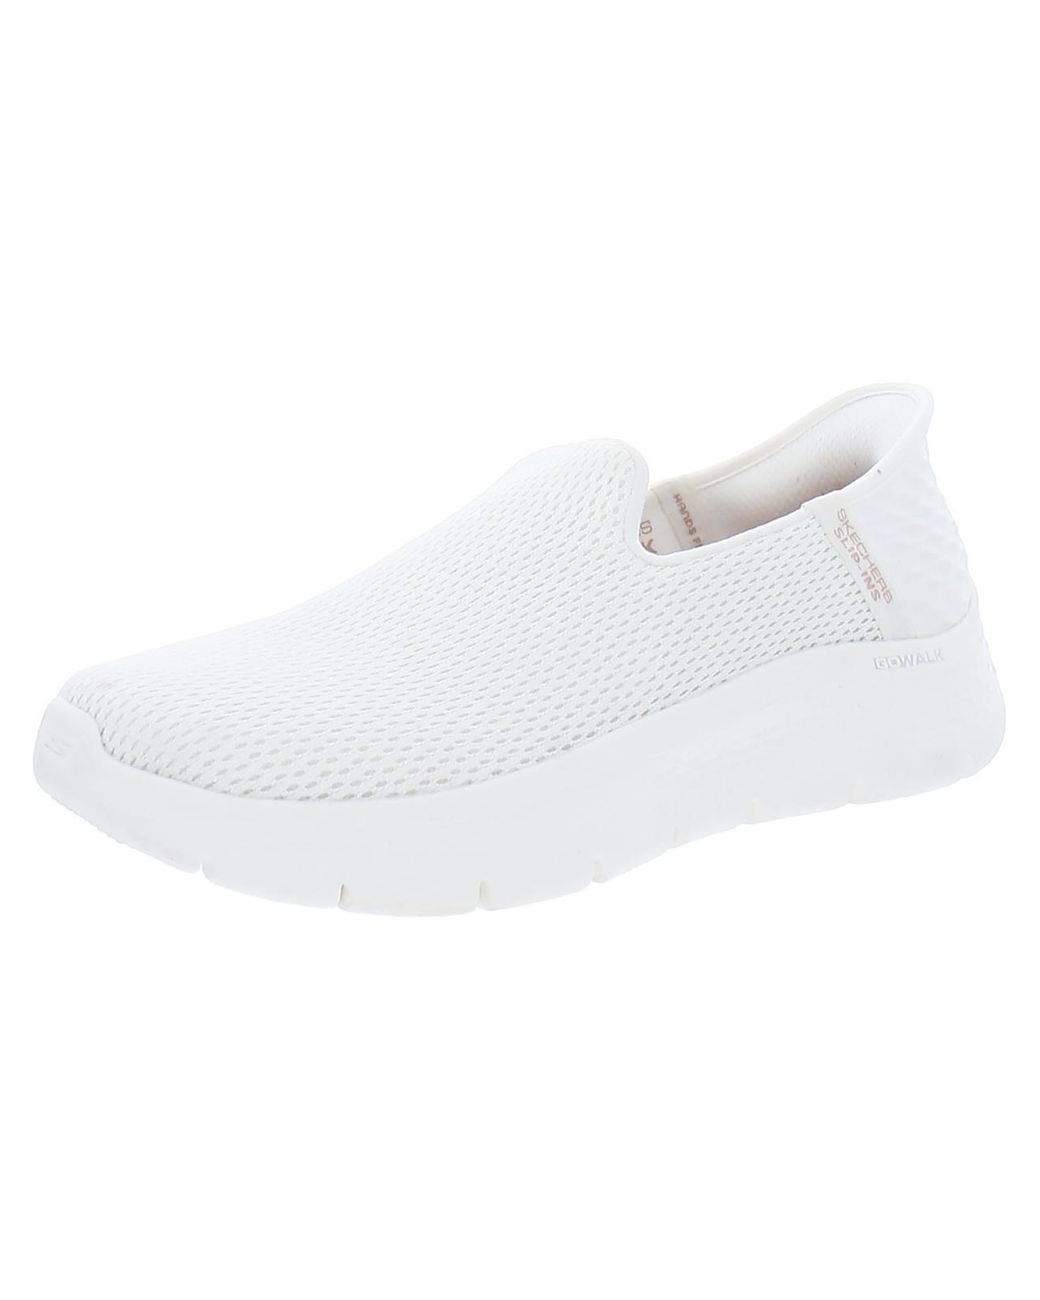 Skechers Go Walk Flex Relish Mesh Memory Foam Walking Shoes in White | Lyst